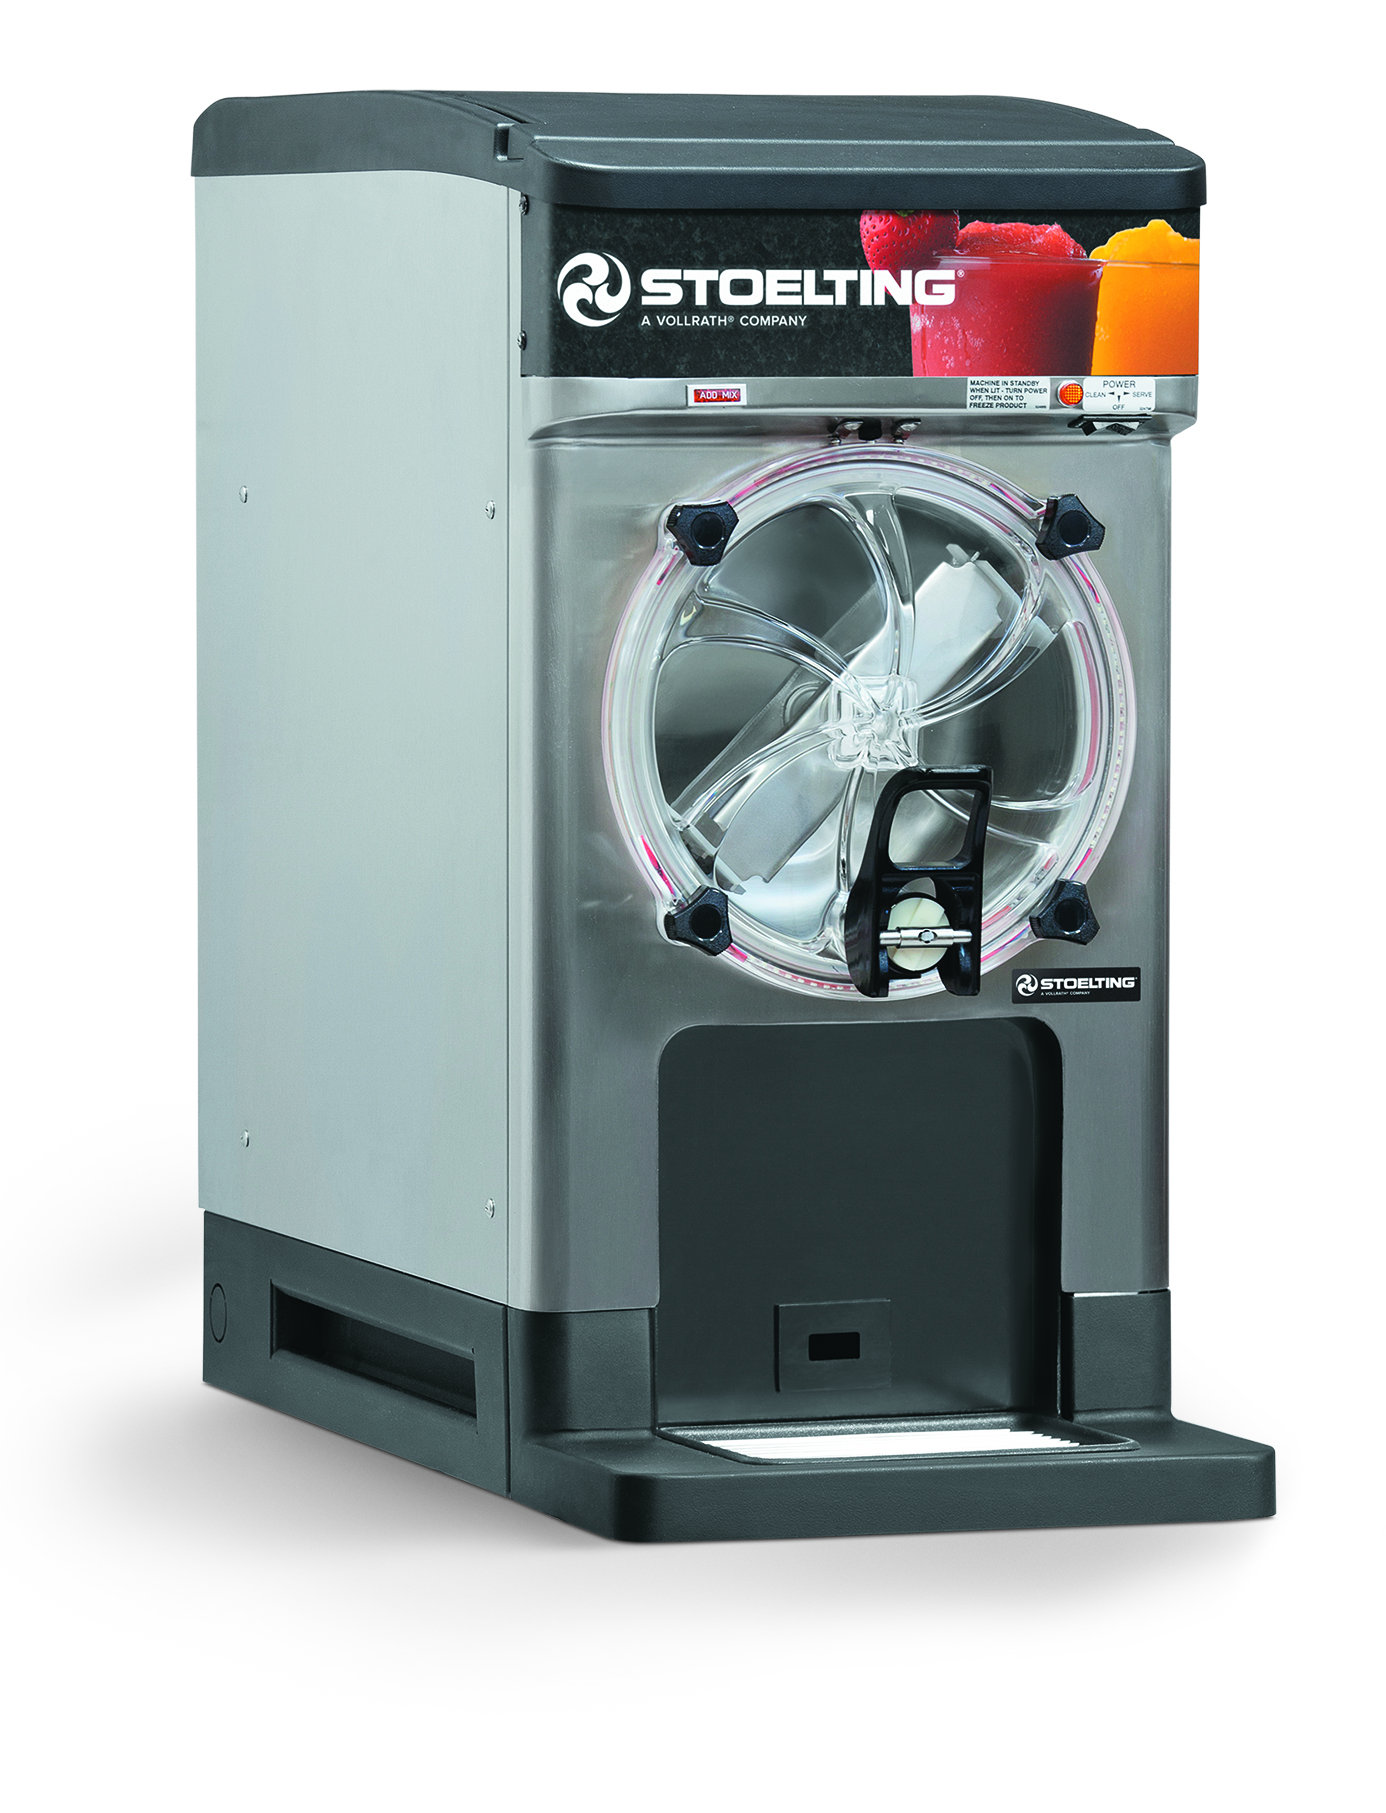 Stoelting's new frozen uncarbonated beverage dispenser